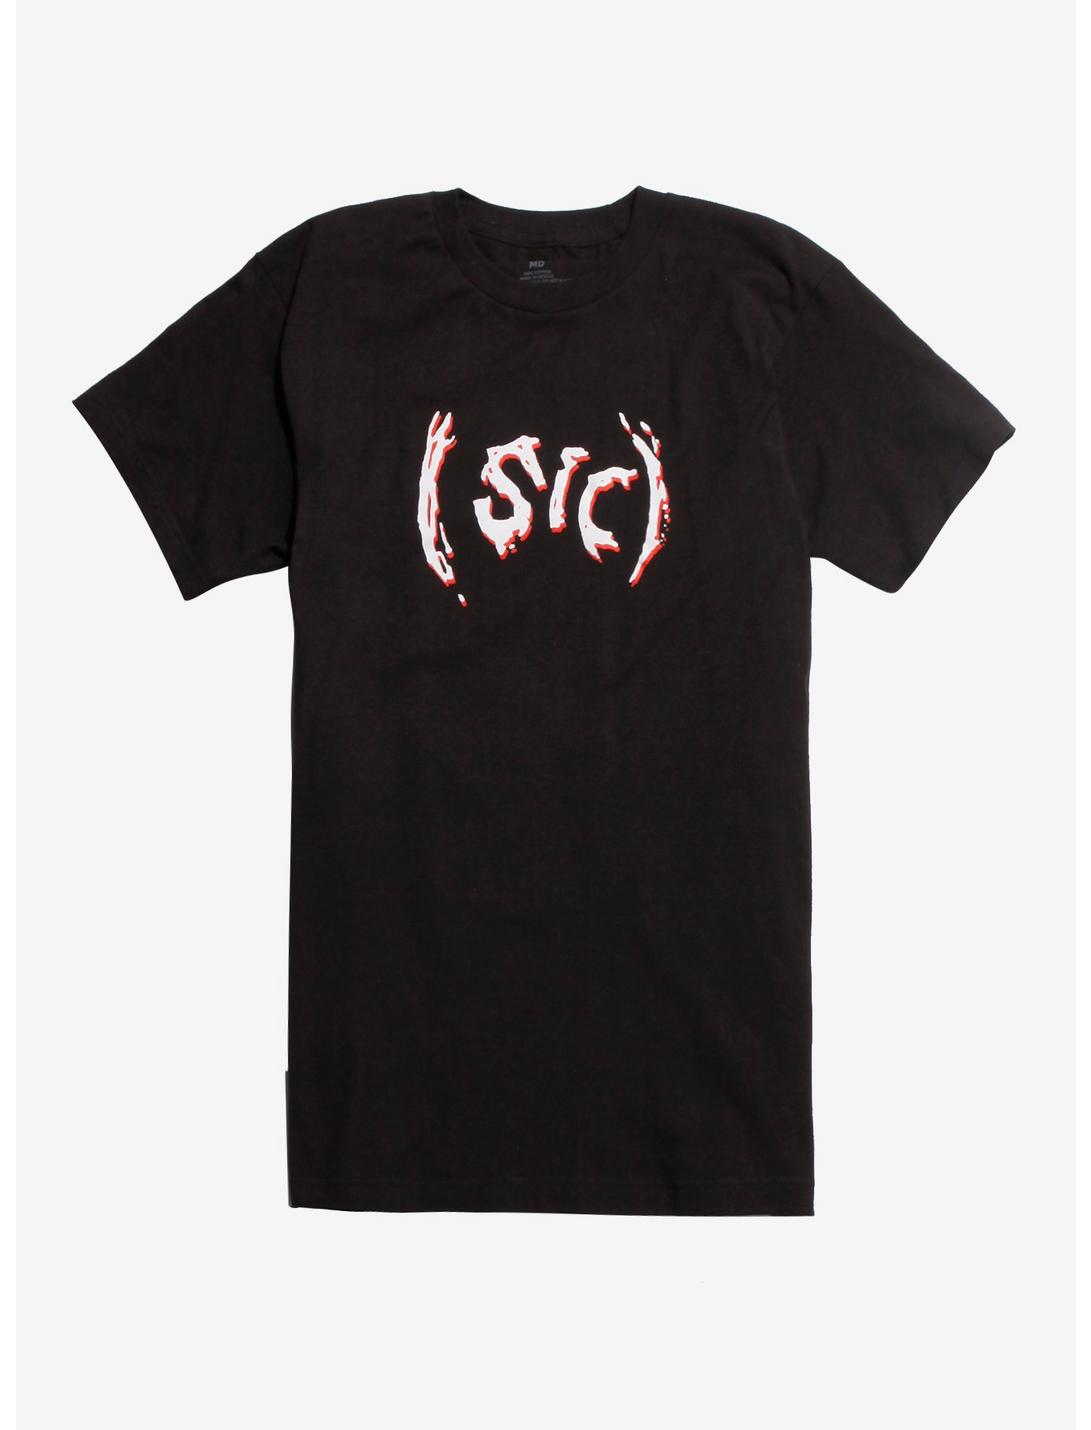 Slipknot (Sic) T-Shirt, BLACK, hi-res